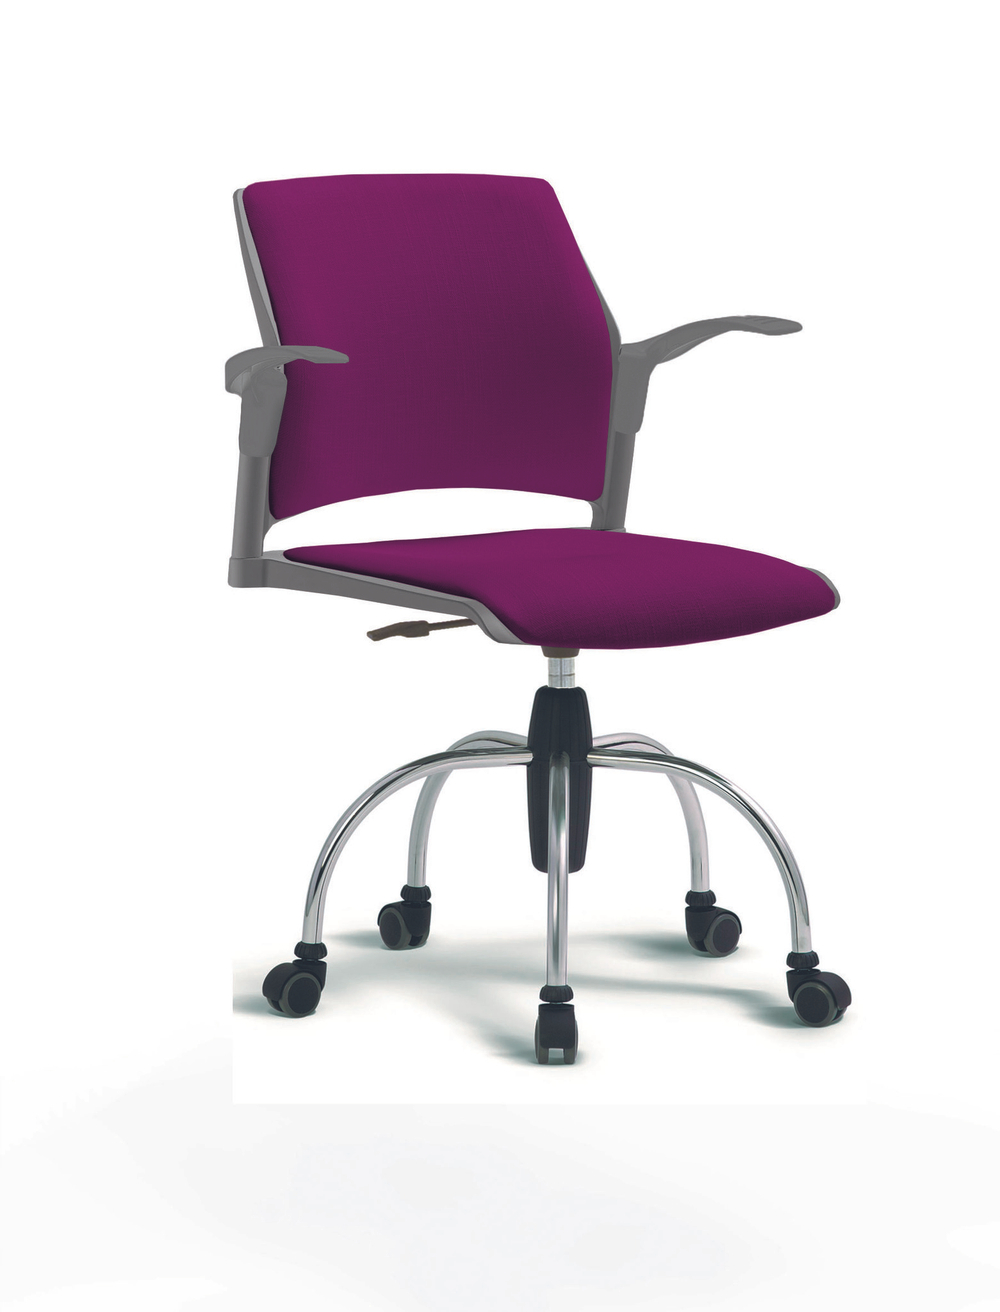 Кресло Rewind каркас хромированный, пластик серый, база паук хромированная, с открытыми подлокотниками, сидение и спинка фиолетовые